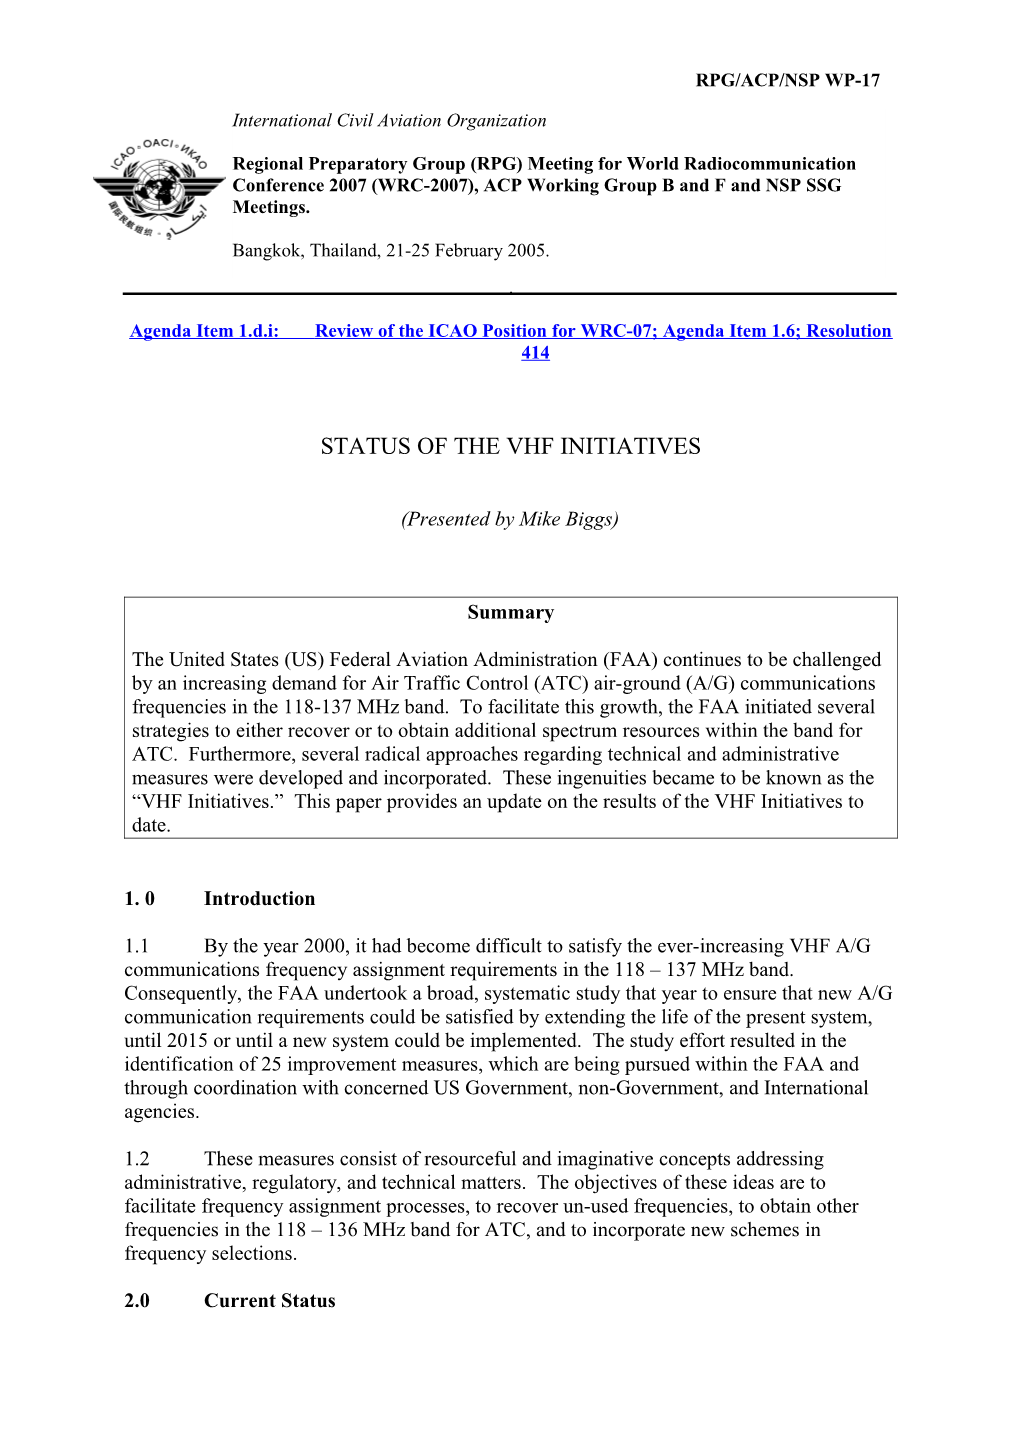 Status of the VHF Activities